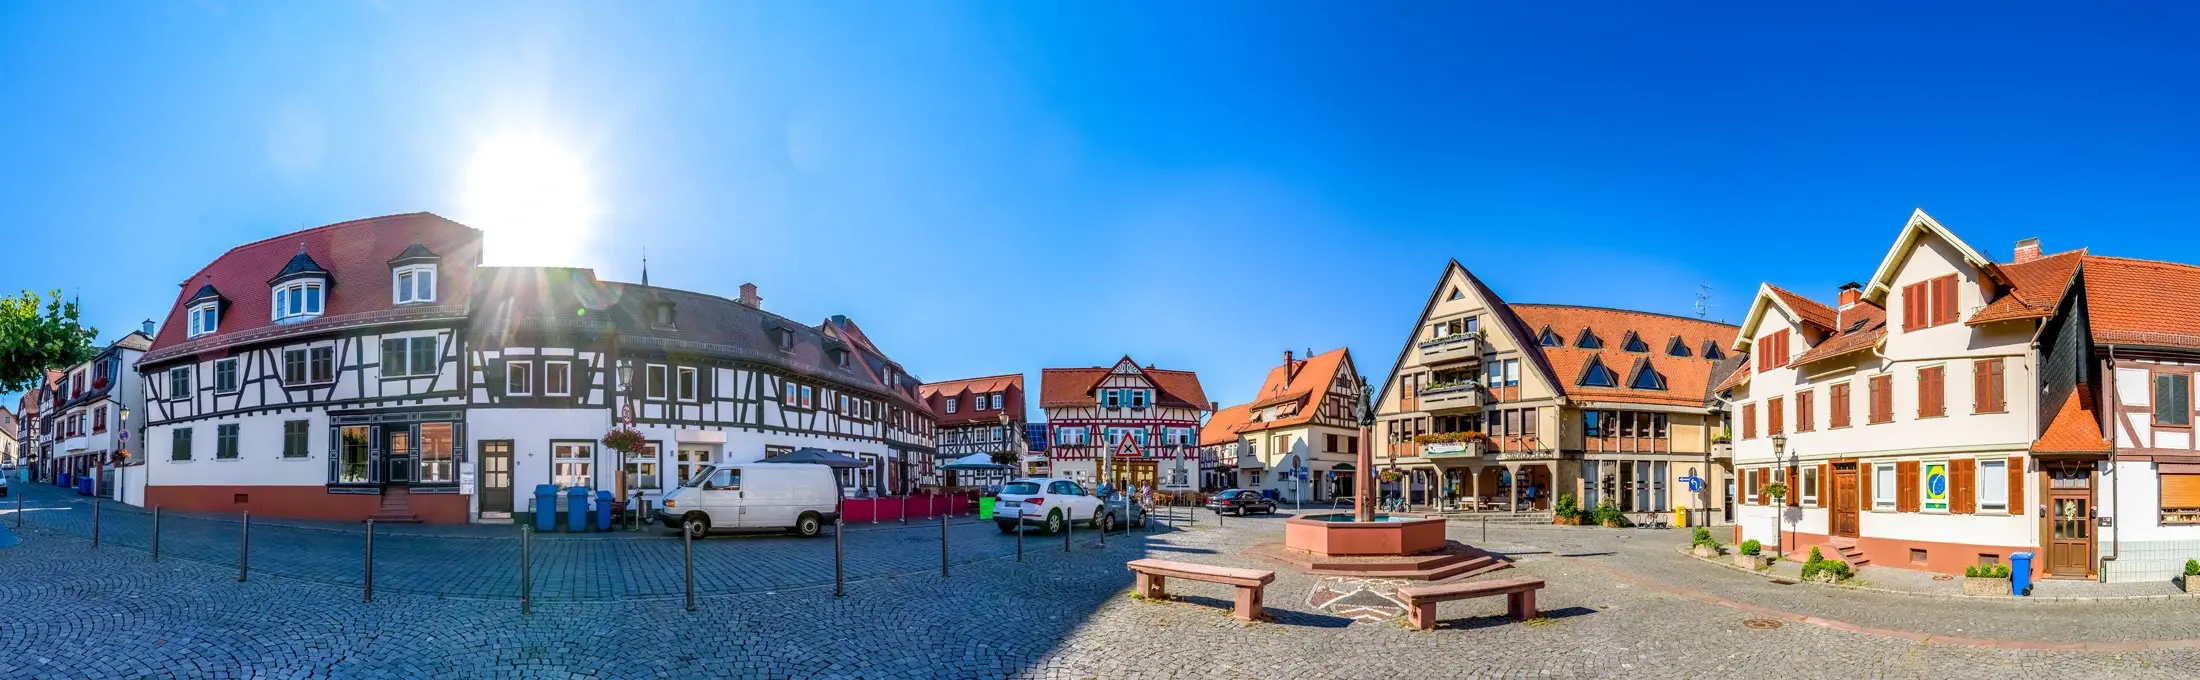 Der Marktplatz von Oberursel im Taunus an einem sonnigen Tag mit zahlreichen Fachwerkhäusern und dem St. Ursula Brunnen